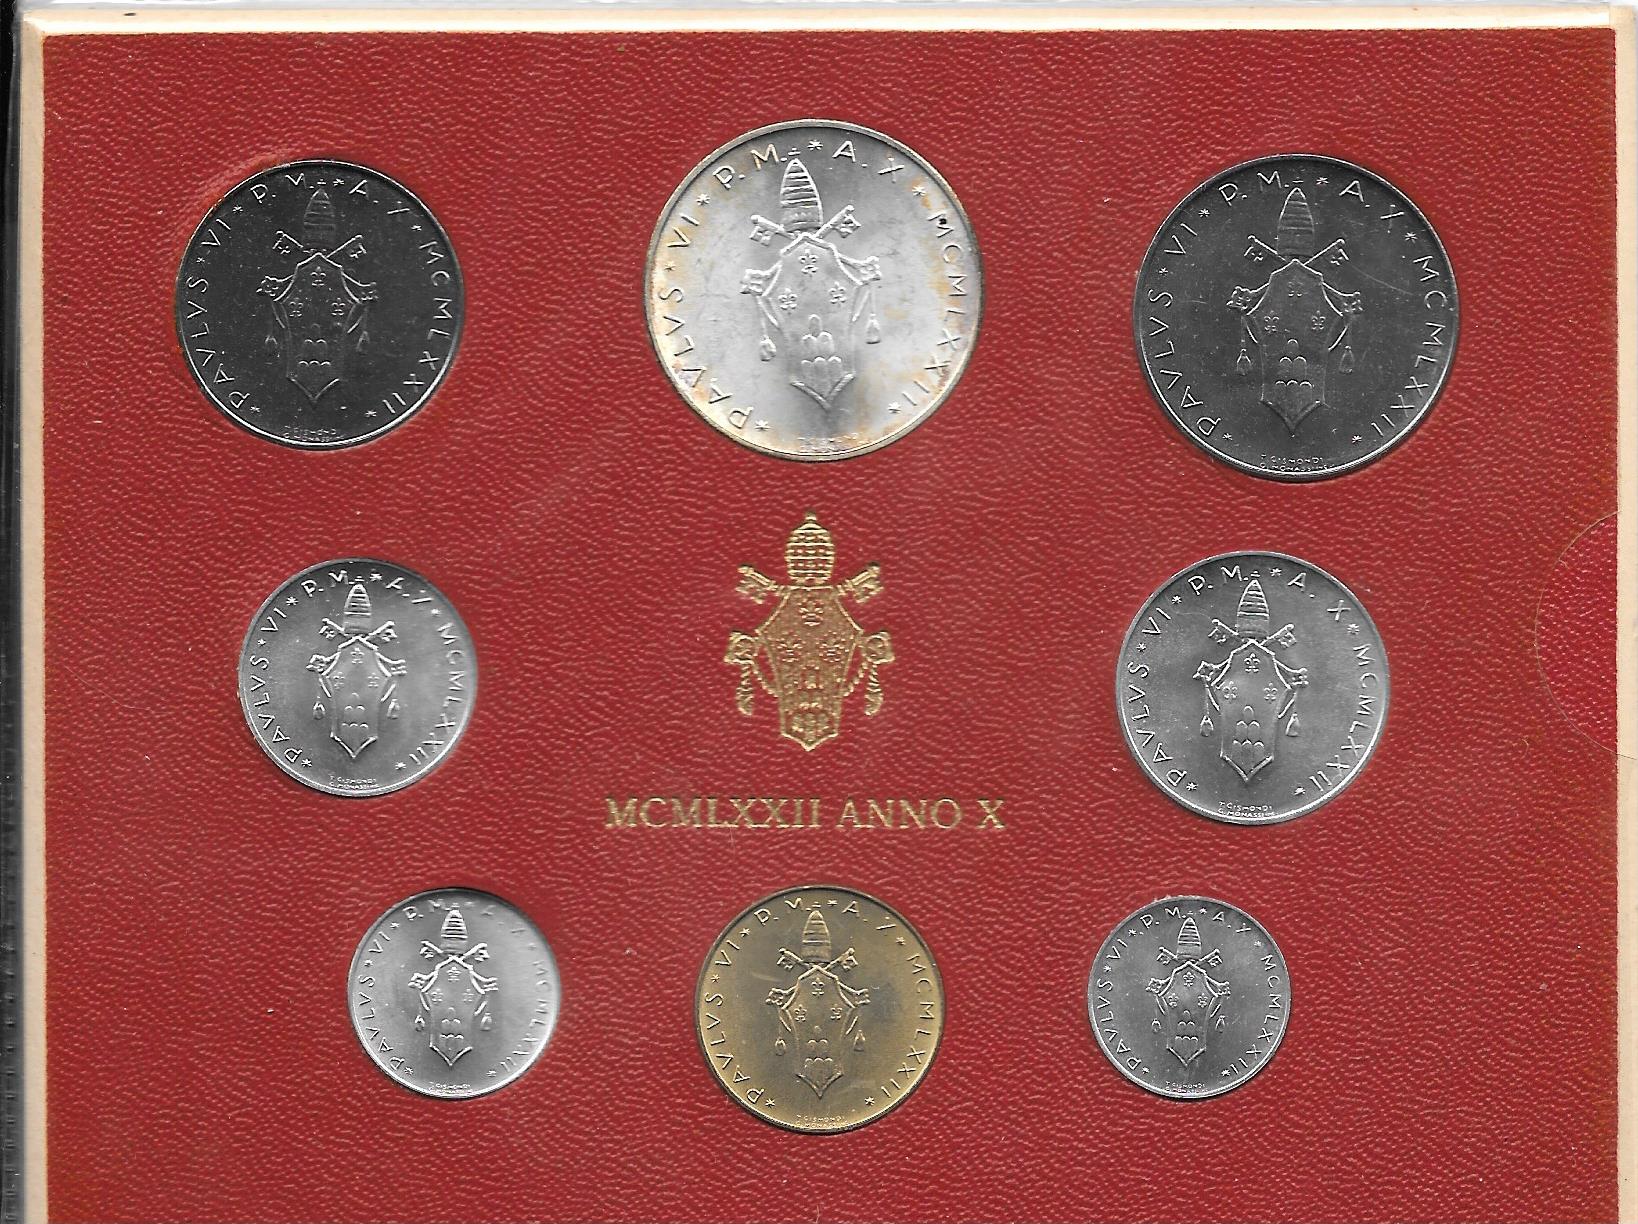 Serie completa di 8 monete " Paolo VI - anno 10 "